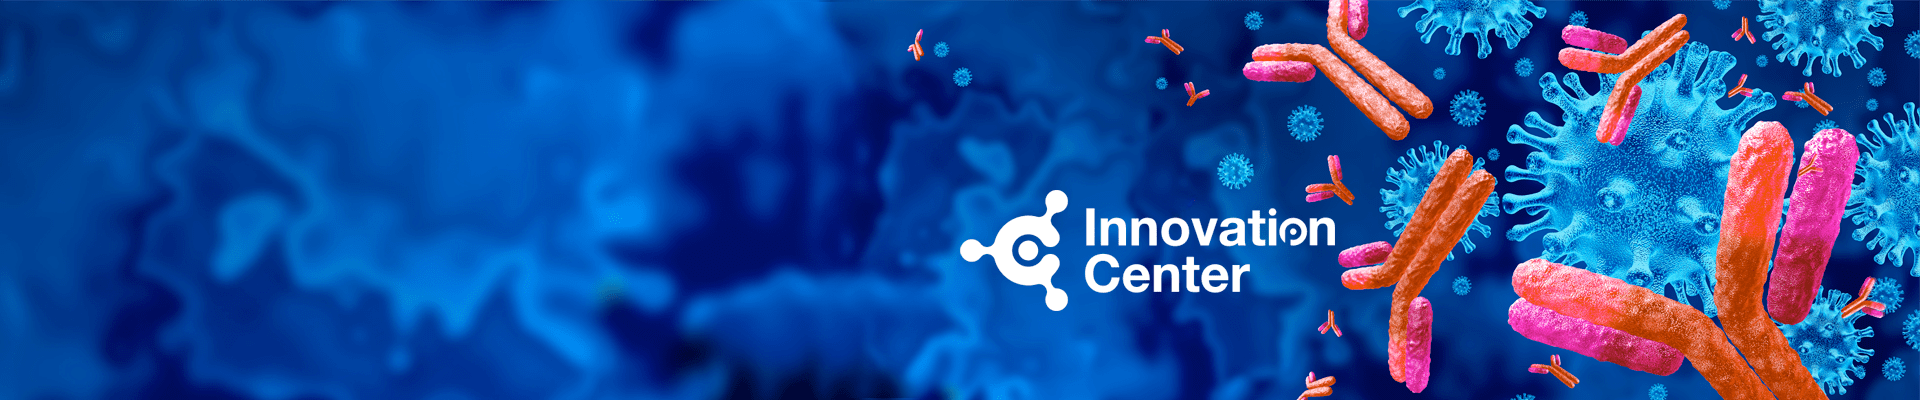 Innovation Center Banner